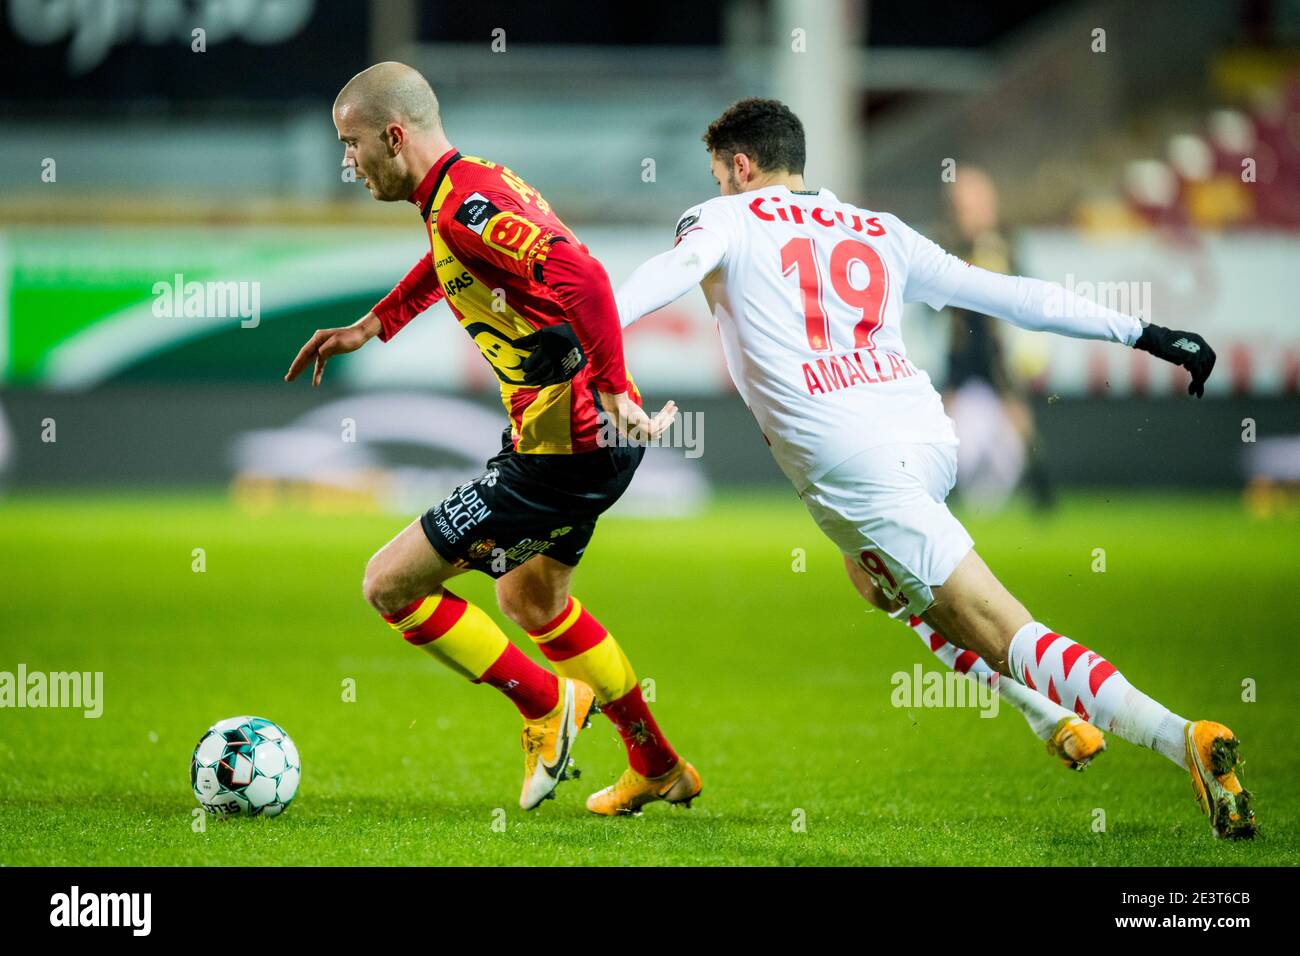 Geoffrey Hairemans di Mechelen e Selim Amallah di Standard combattono per la palla durante una partita di calcio tra KV Mechelen e Standard de Liege, mercoledì Foto Stock